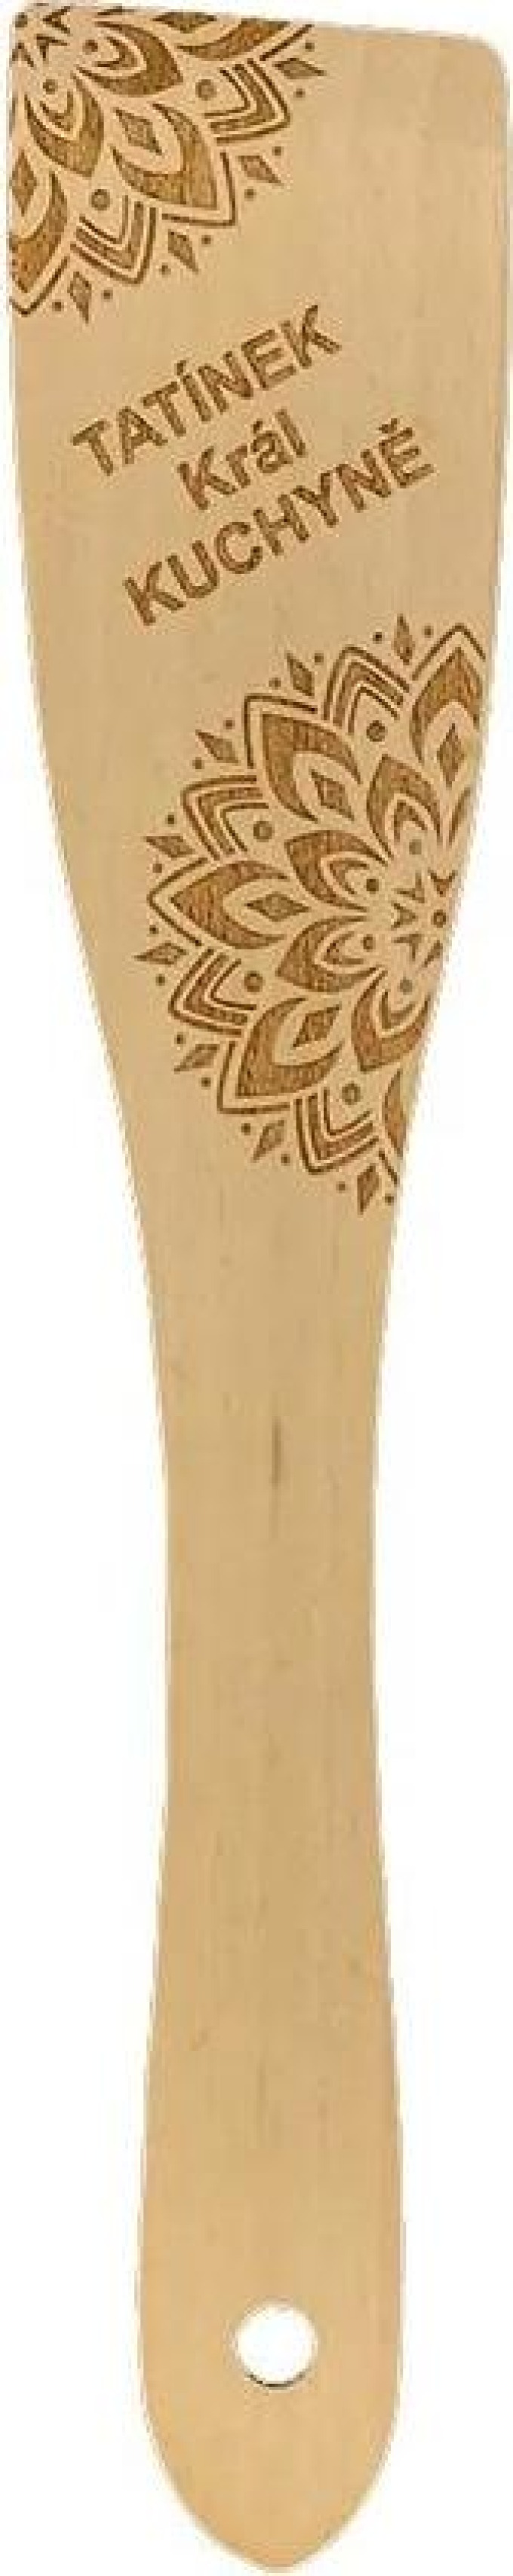 AMADEA Dřevěná obracečka buk text "tatínek král kuchyně", masivní dřevo, délka 30 cm, český výrobek